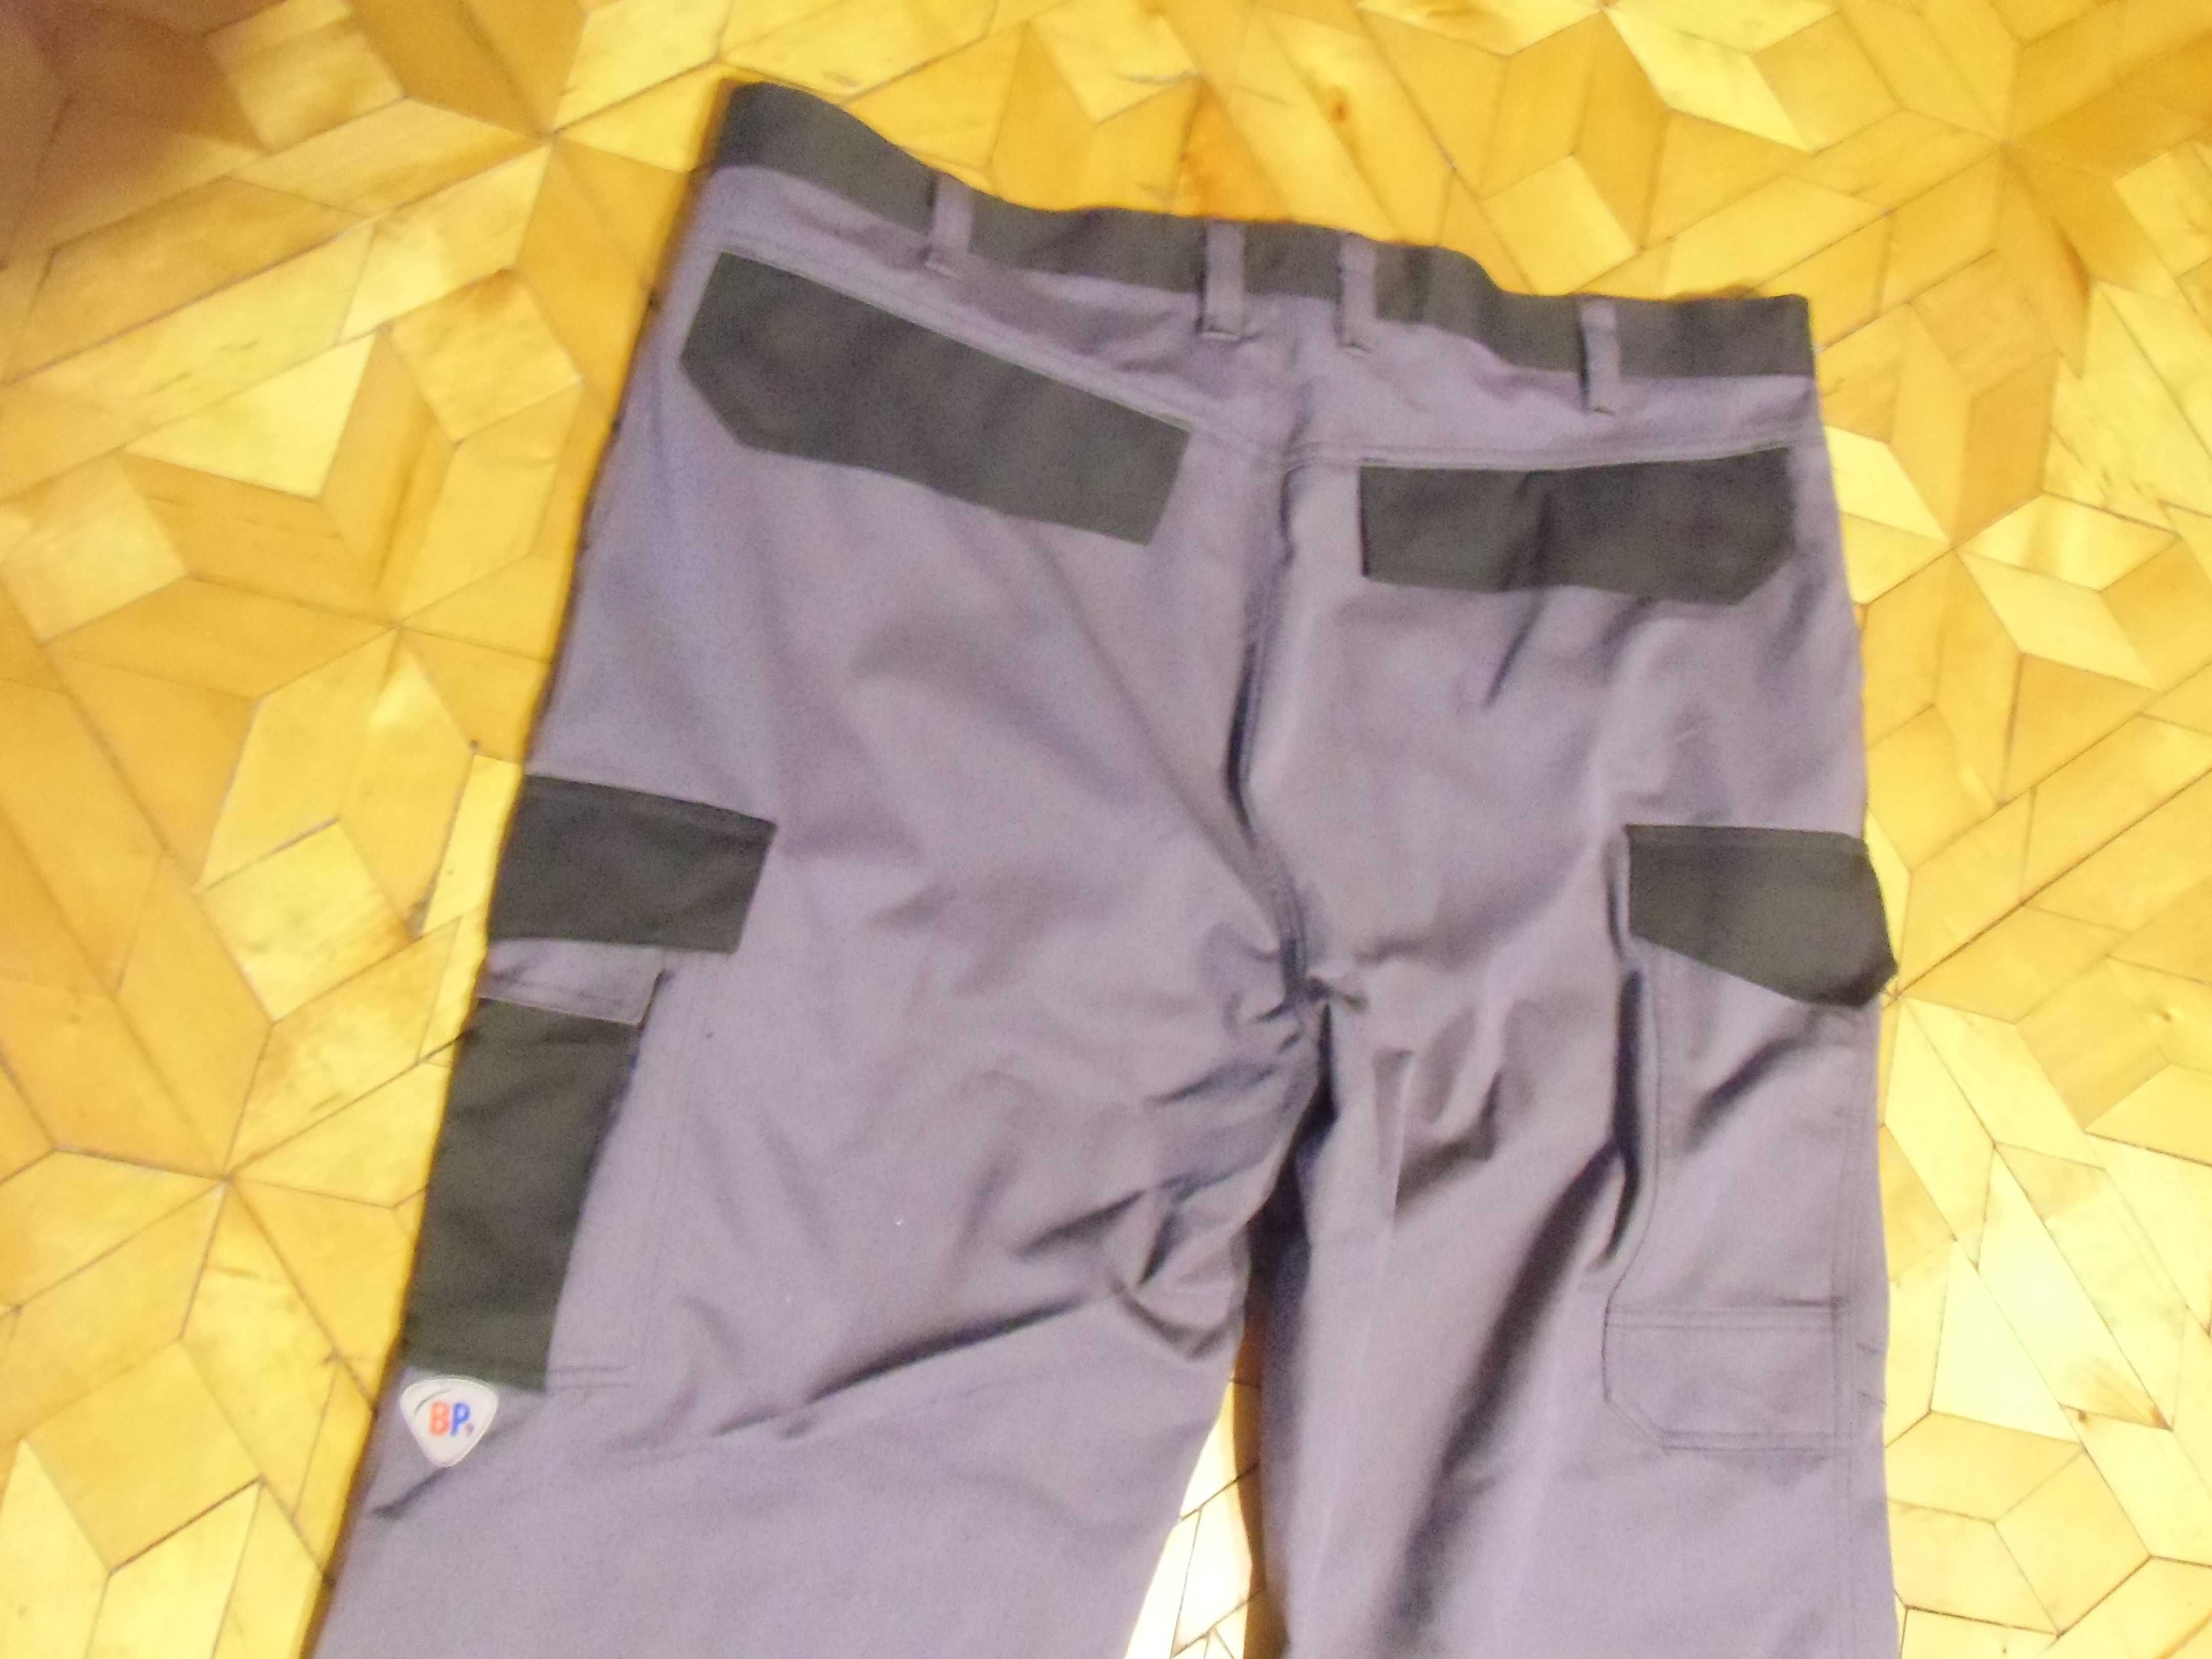 Firmowe spodnie BP dla spawacza wielofunkcyjne NOWE r 54